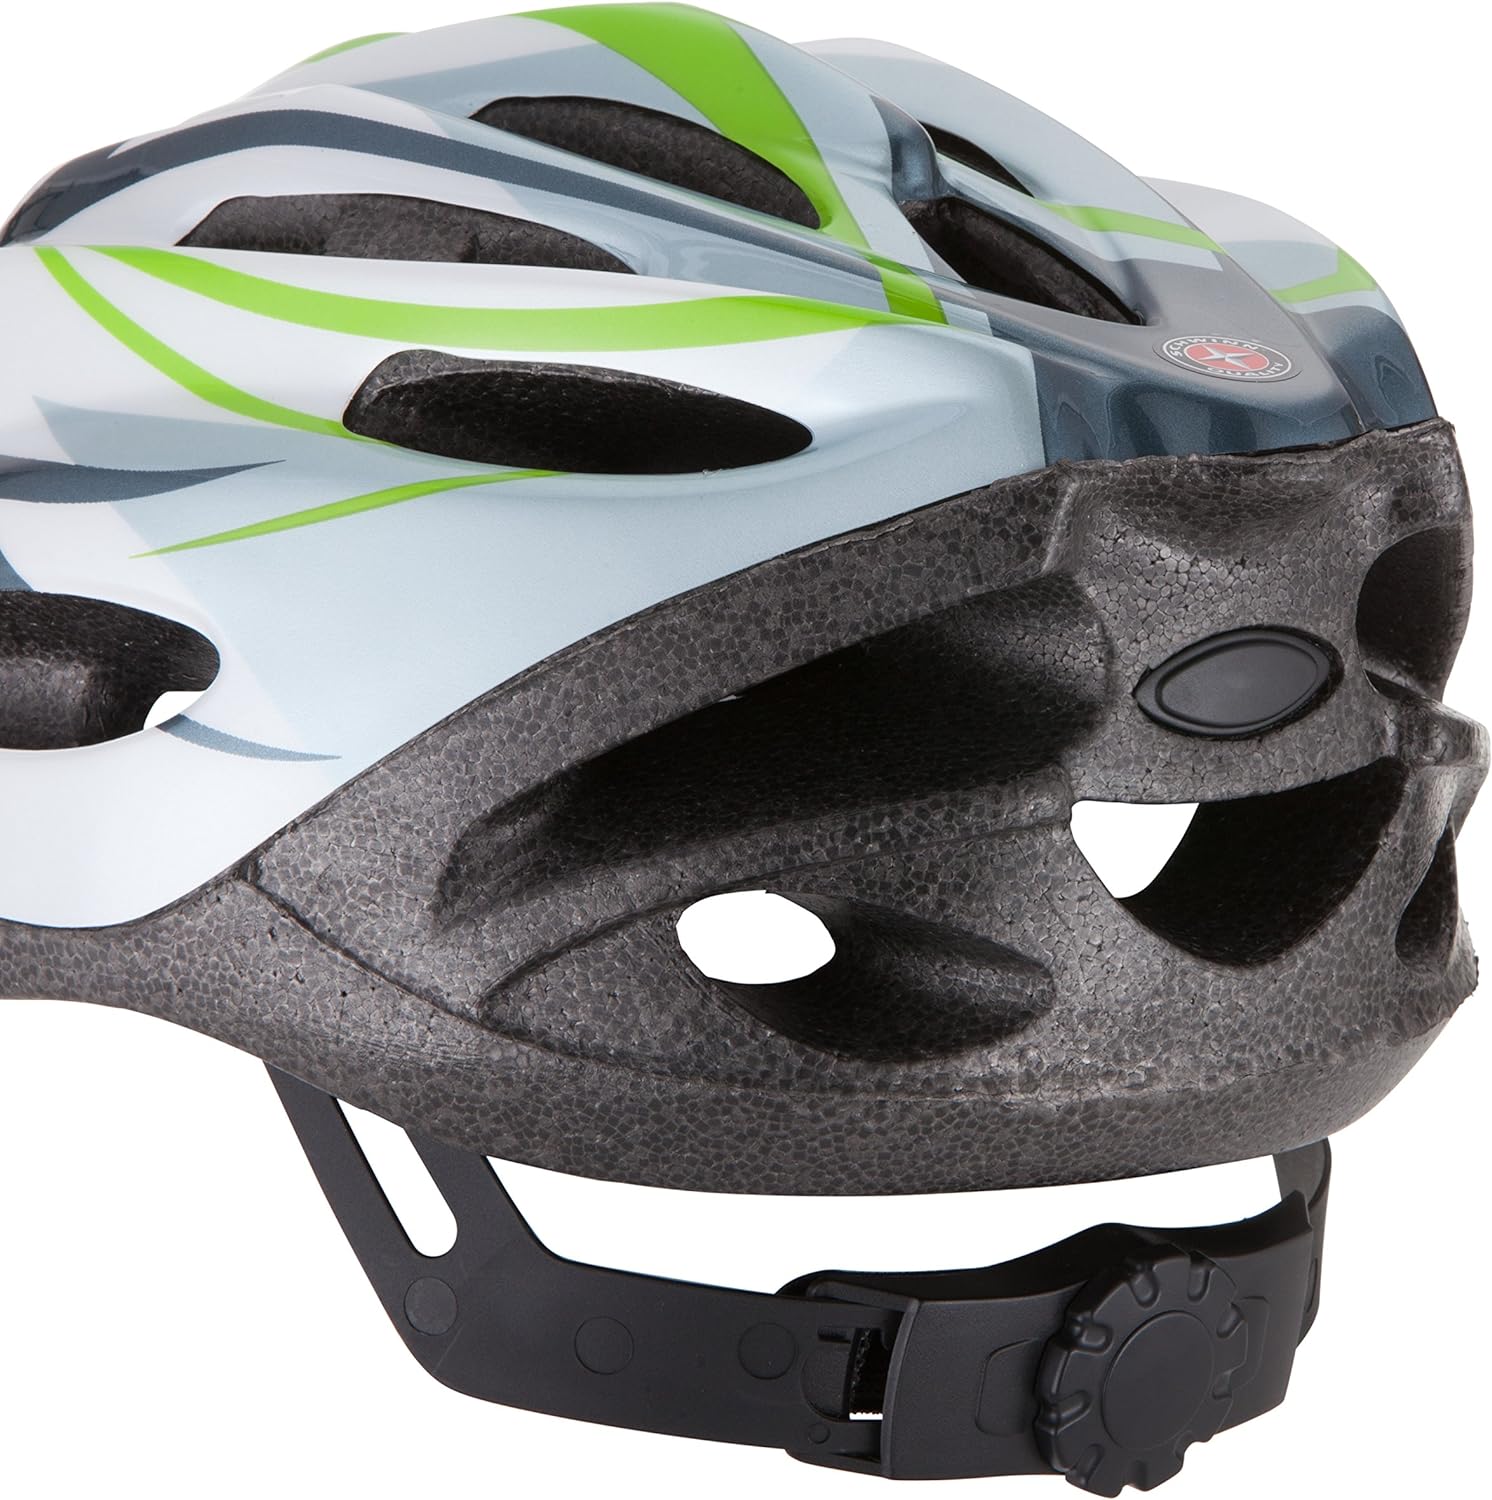 Schwinn Traveler Bike Helmet, Adult and Youth Sizes White/Green, 2 Pack